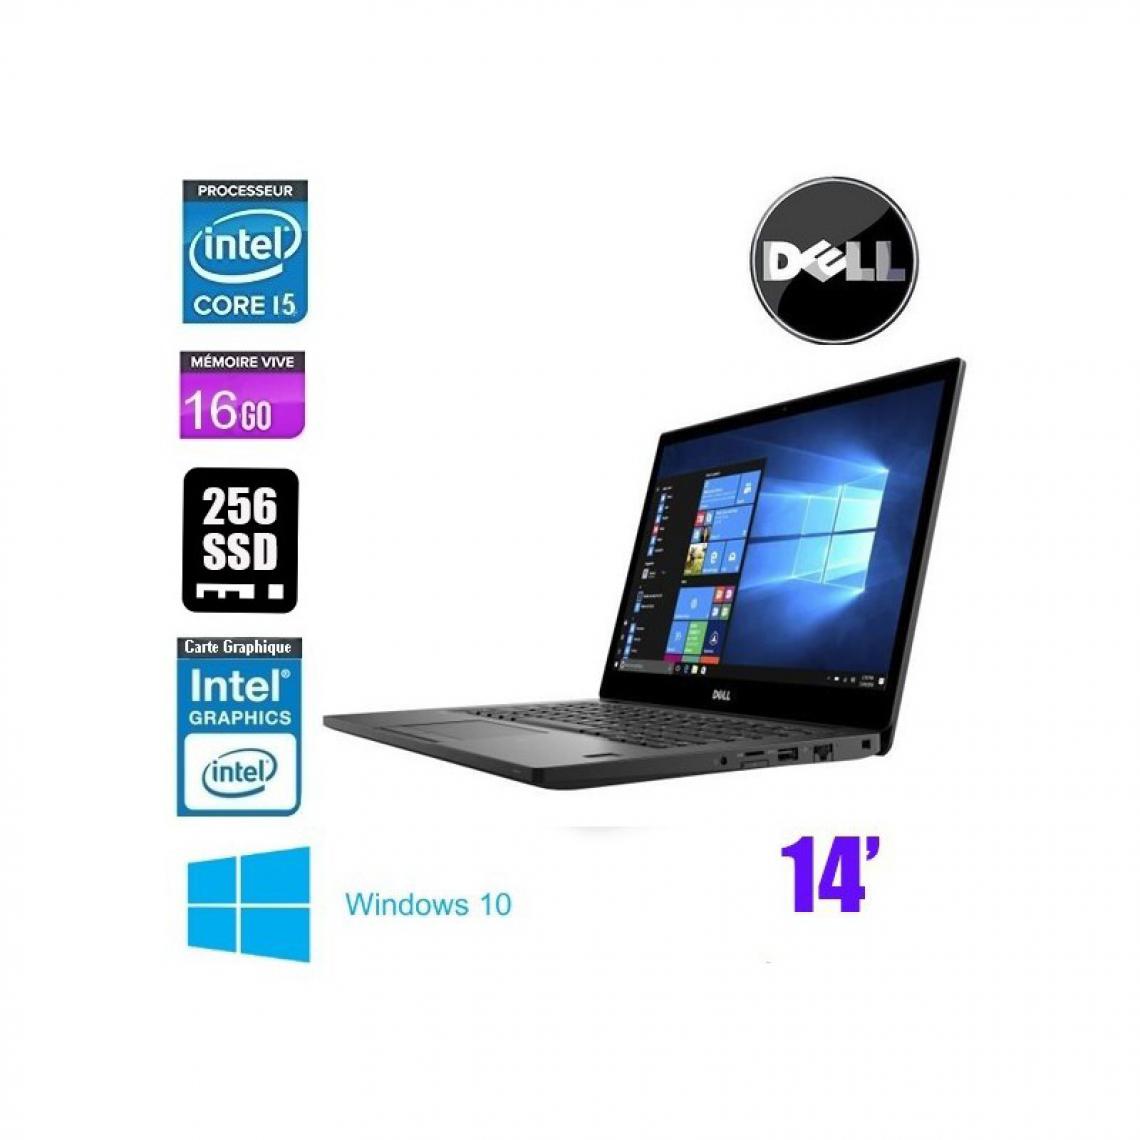 Dell - DELL LATITUDE E7480 CORE I5 7200U 2.5GHZ QWERTY - PC Portable